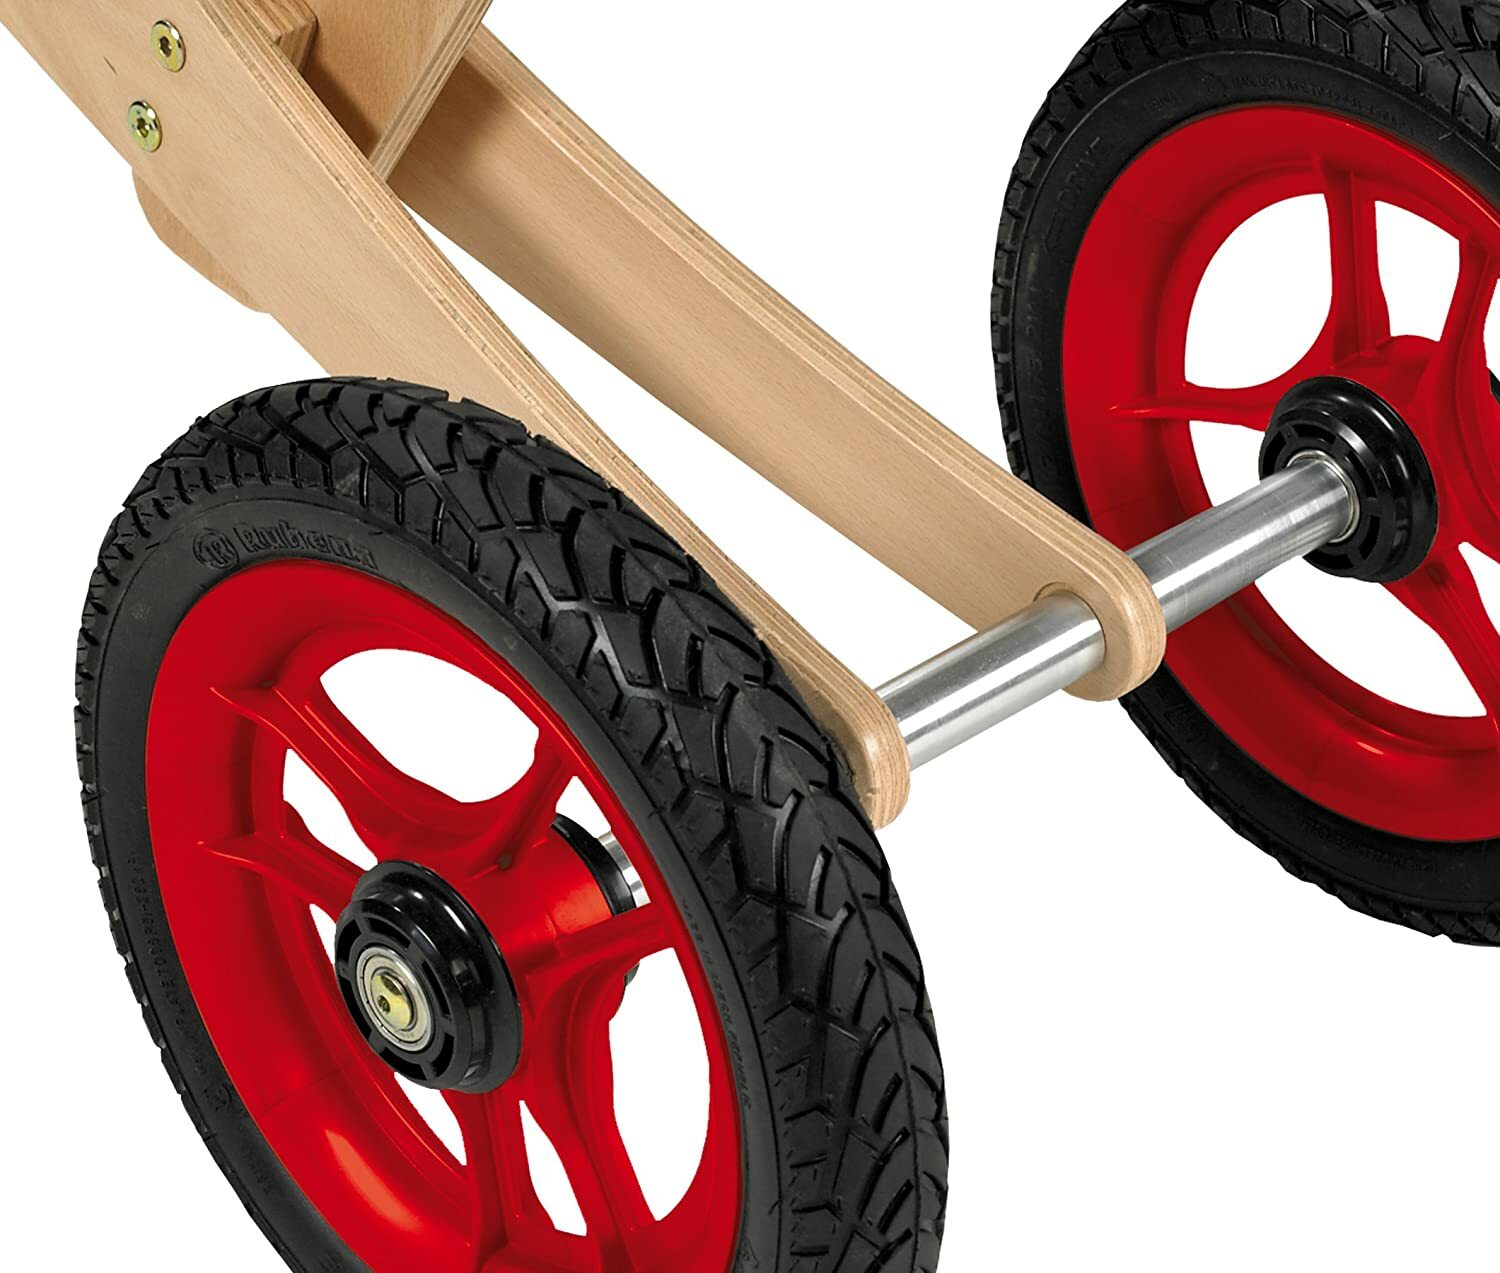 Geuther - Tricycle enfant bois naturel, draisienne évolutive 2 en 1,  retrait magasin 1h, livraison sous 24/48h